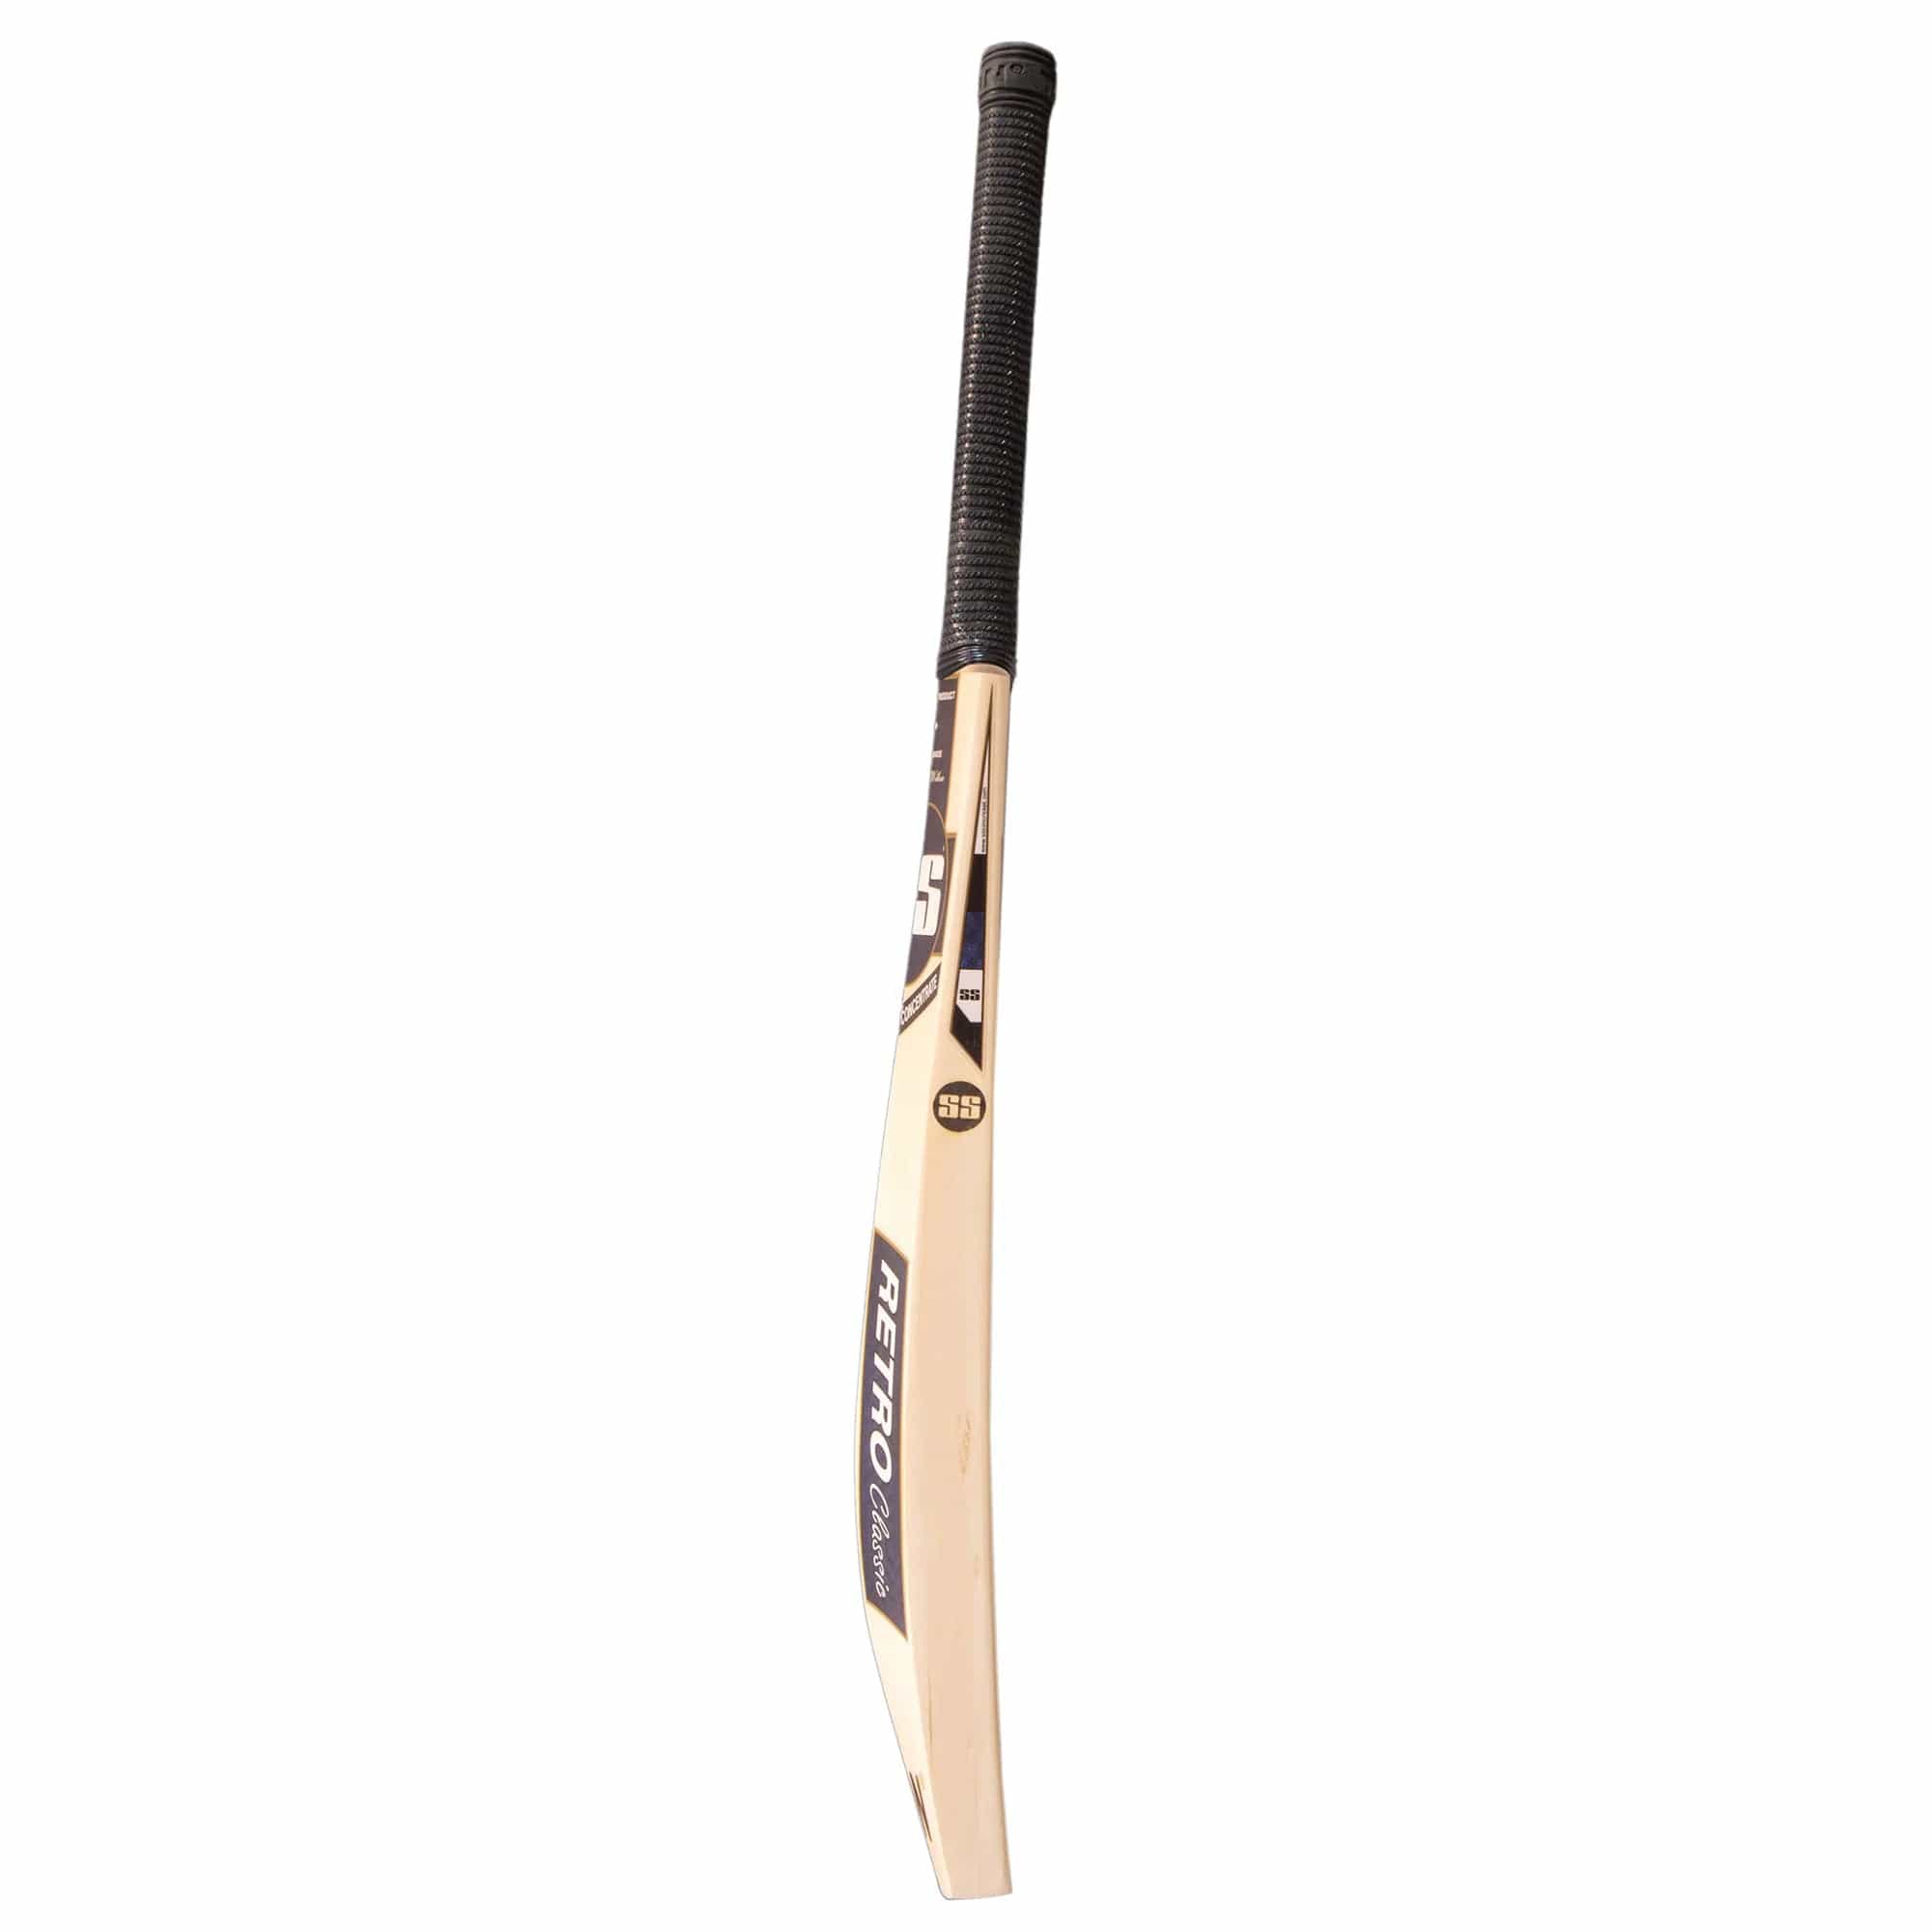 SS Cricket Bats SH SS VA-900 SAIN Adult Cricket Bat